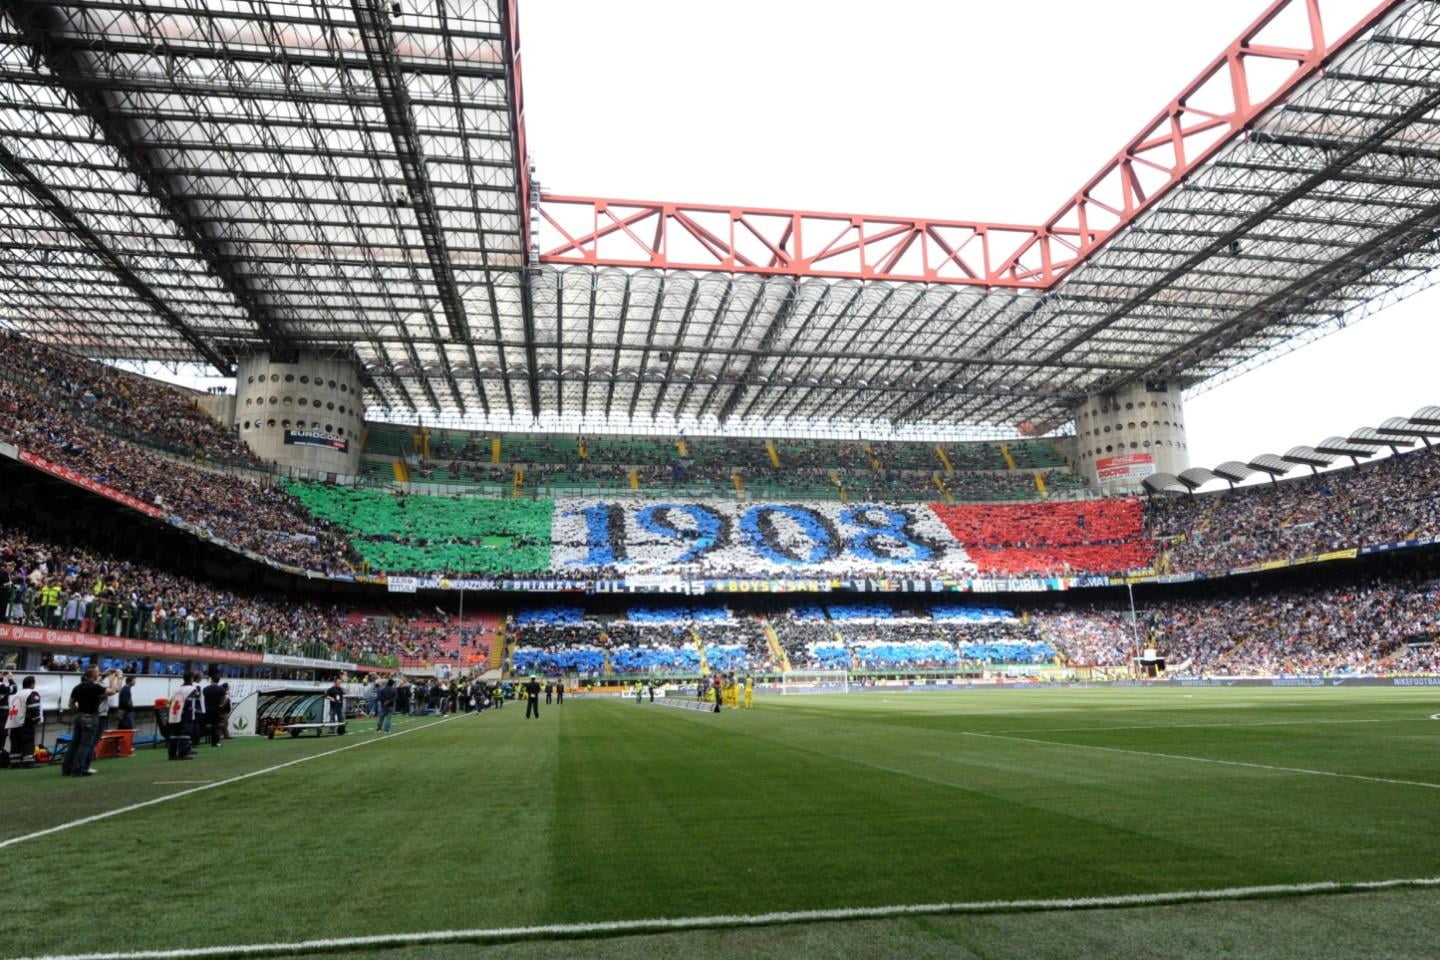 Inter Milan - Empoli FC, 1 januariom 20:45